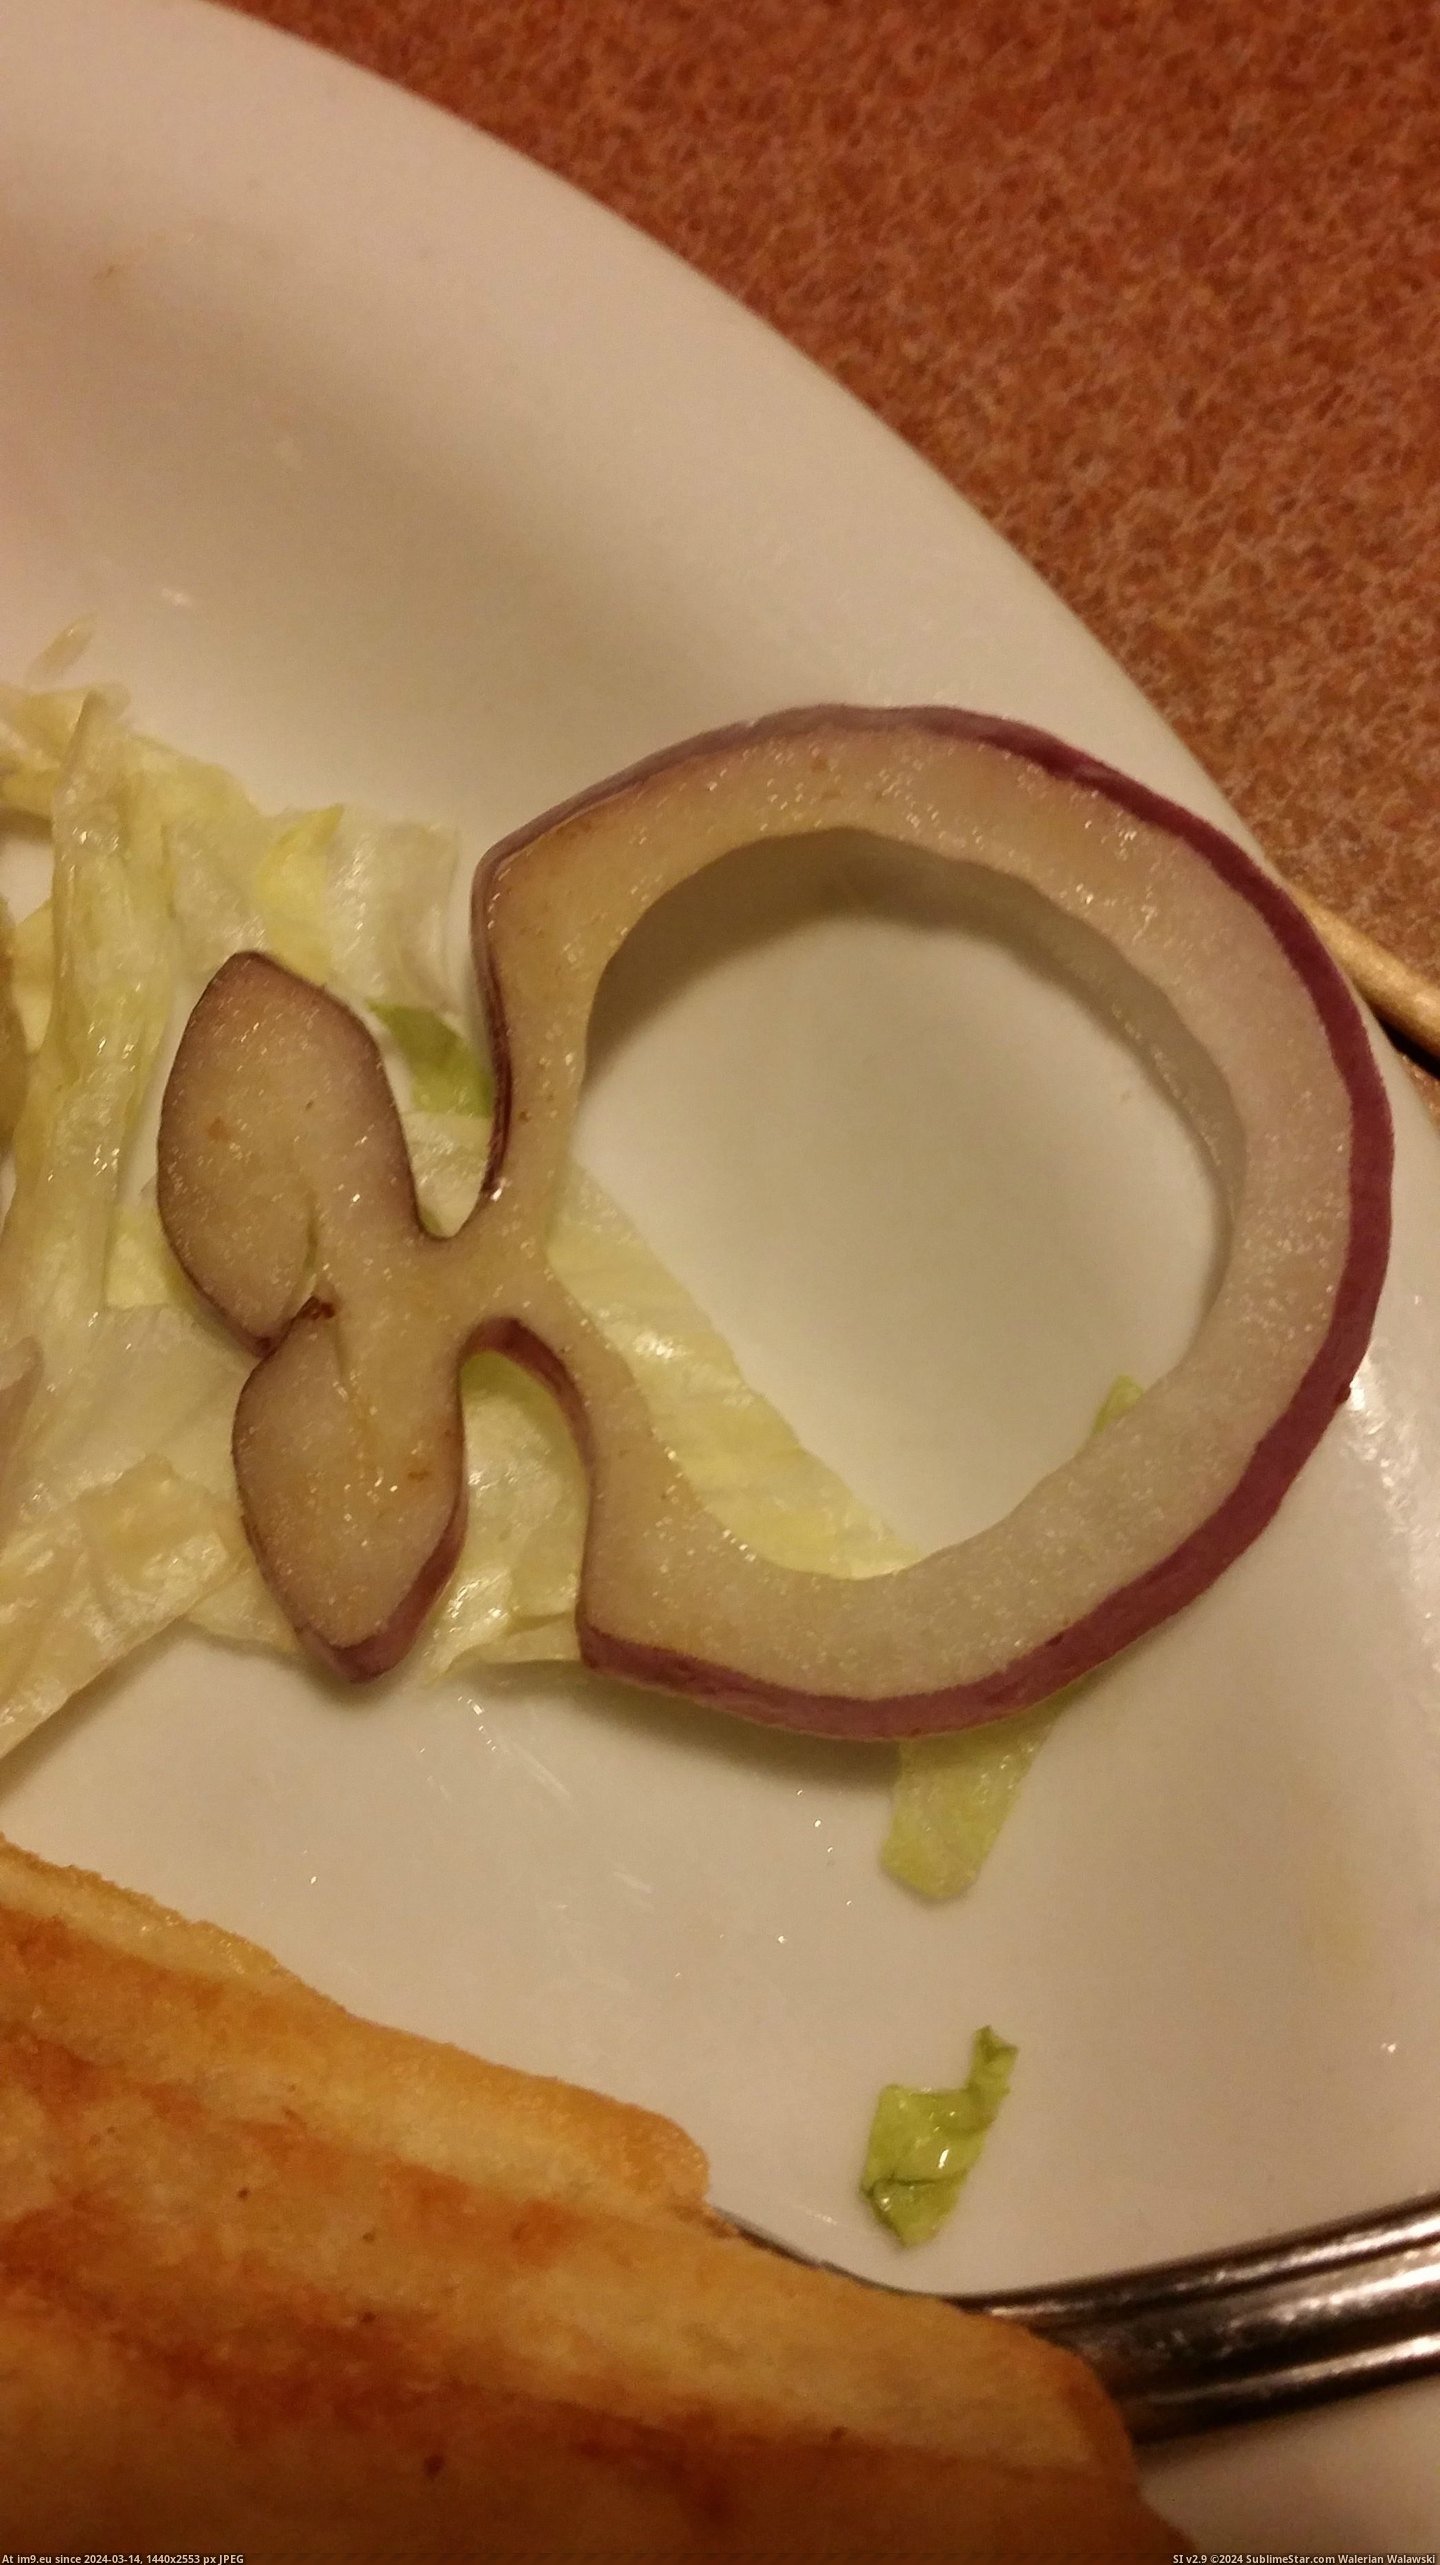 #Fish #Slice #Onion [Mildlyinteresting] This slice of onion looks like a fish. Pic. (Bild von album My r/MILDLYINTERESTING favs))